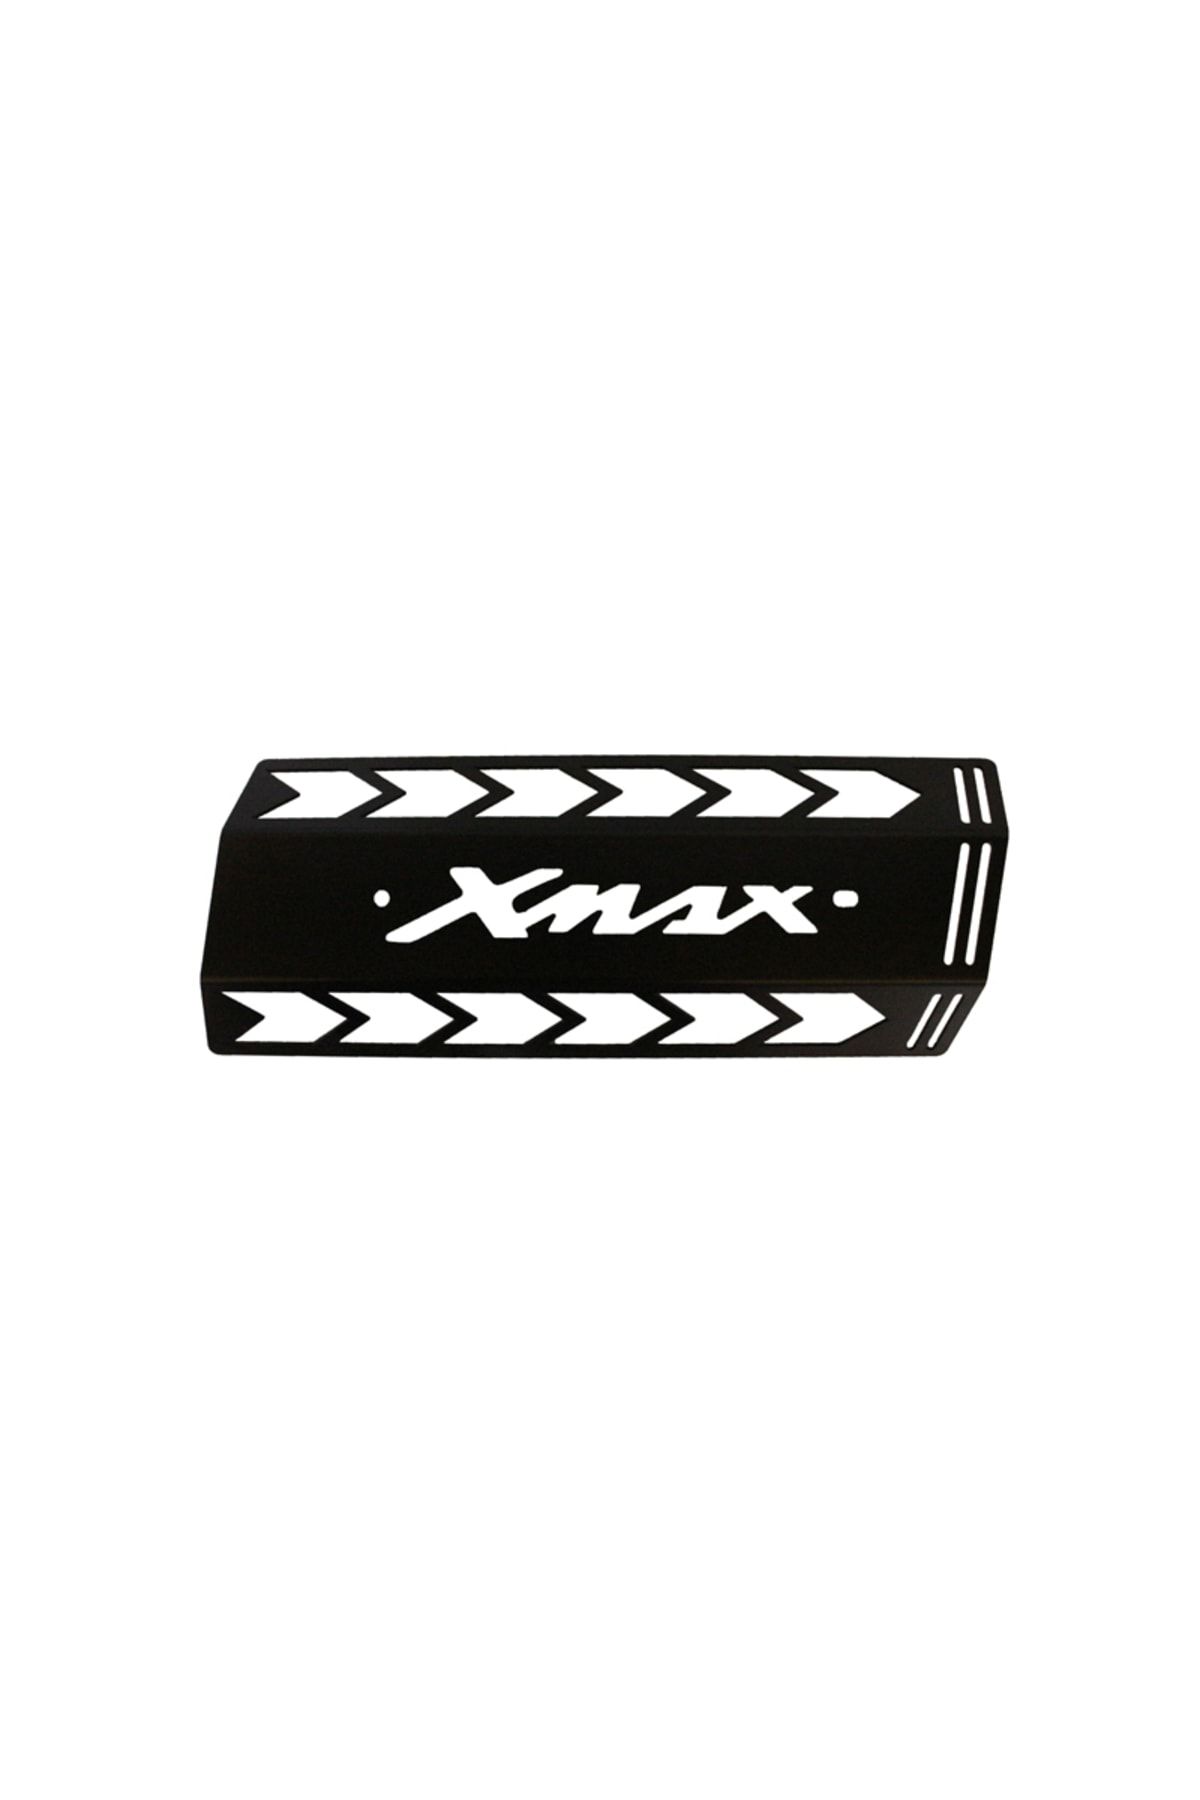 Gogo Yamaha Xmax Egzoz Koruma Demiri Siyah